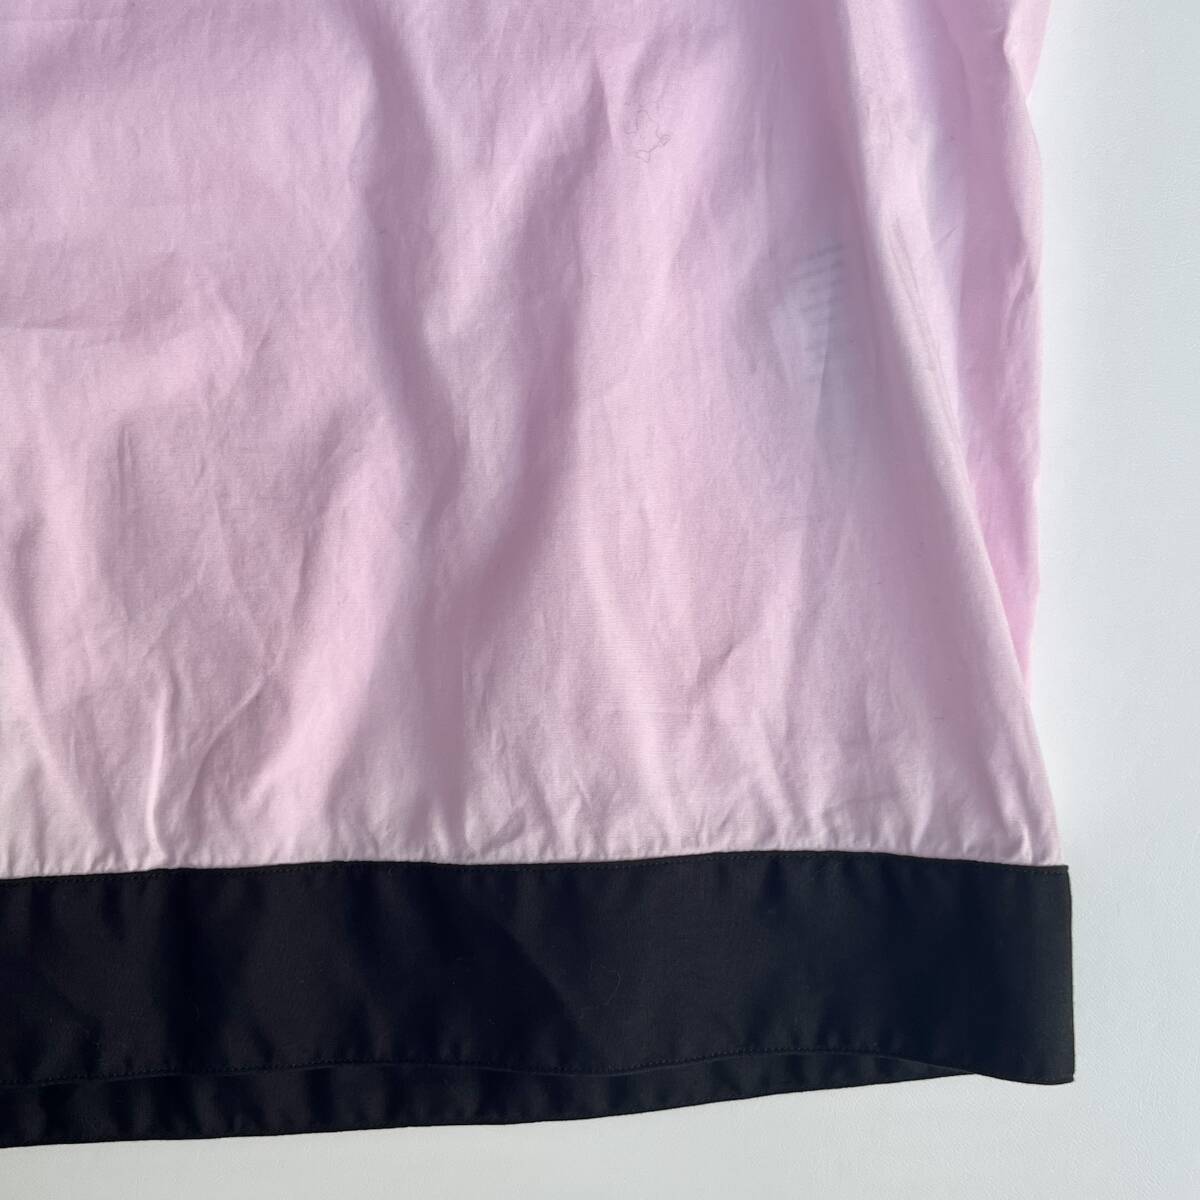 DSQUARDE2 ディースクエアード サイズ50 ボーリングシャツ ロゴ 刺繍 半袖シャツ 開襟シャツ ピンク